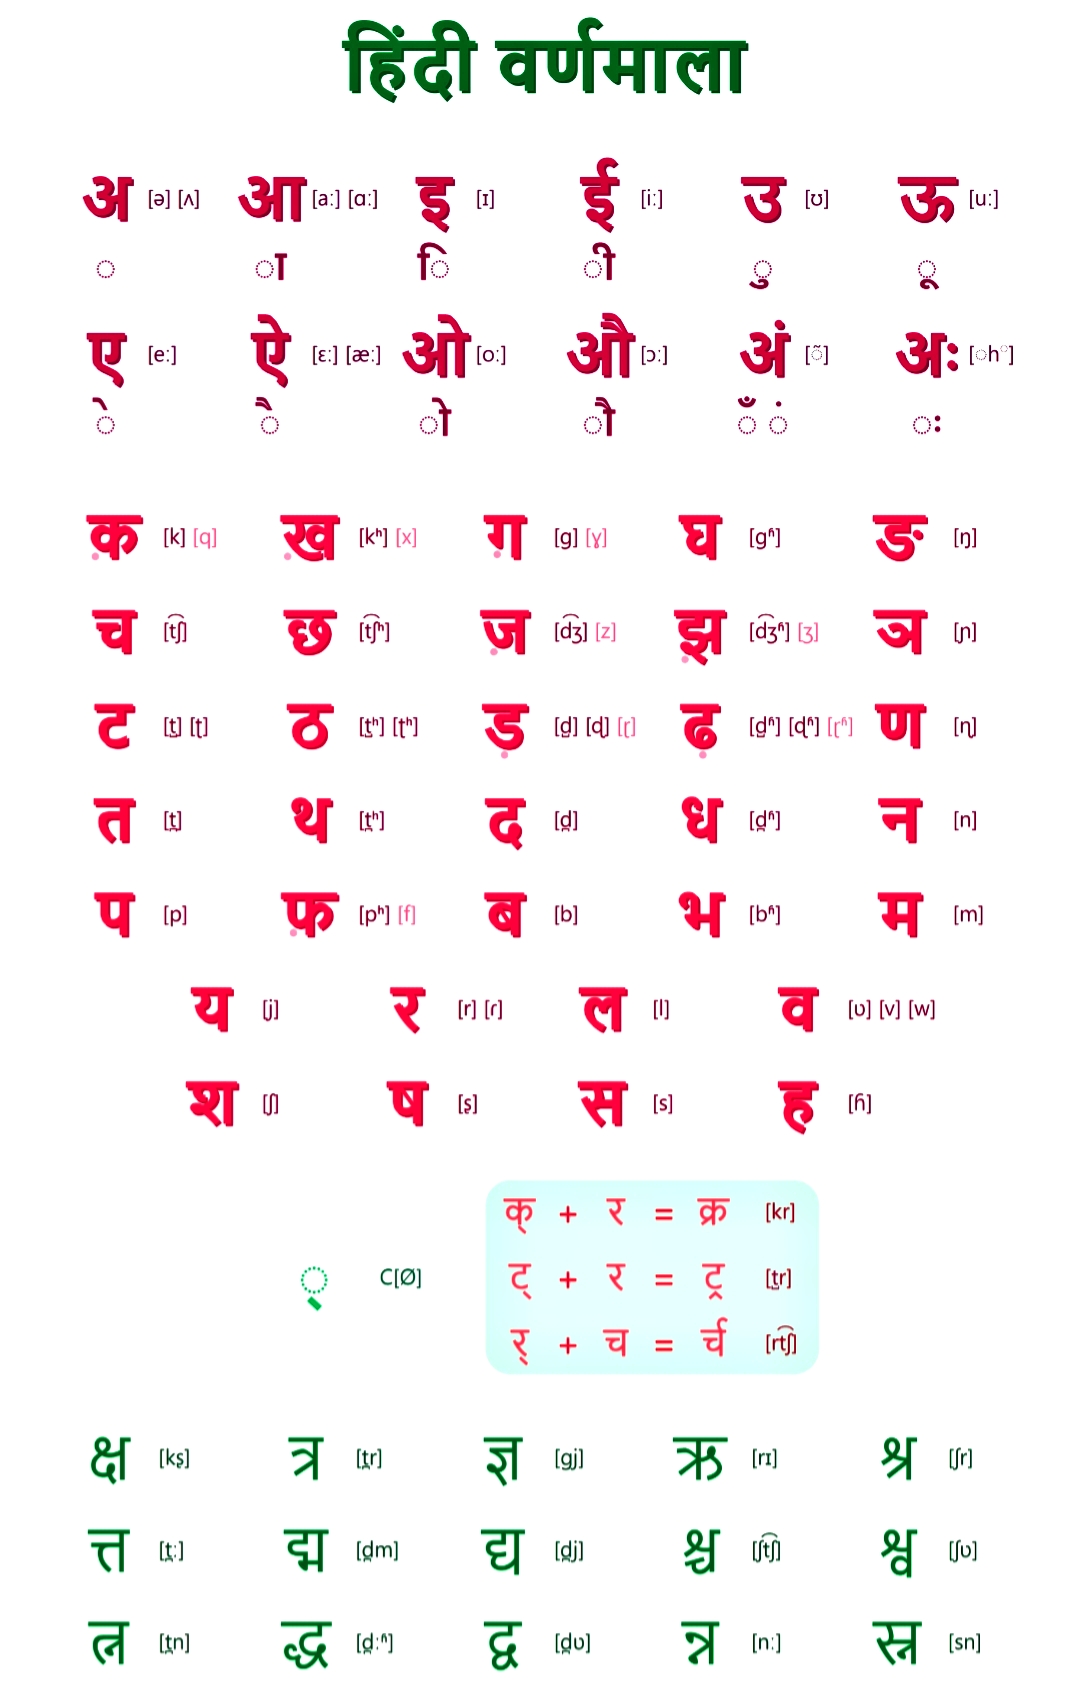 हिंदी वर्णमाला चार्ट | Hindi Varnamala Chart ...